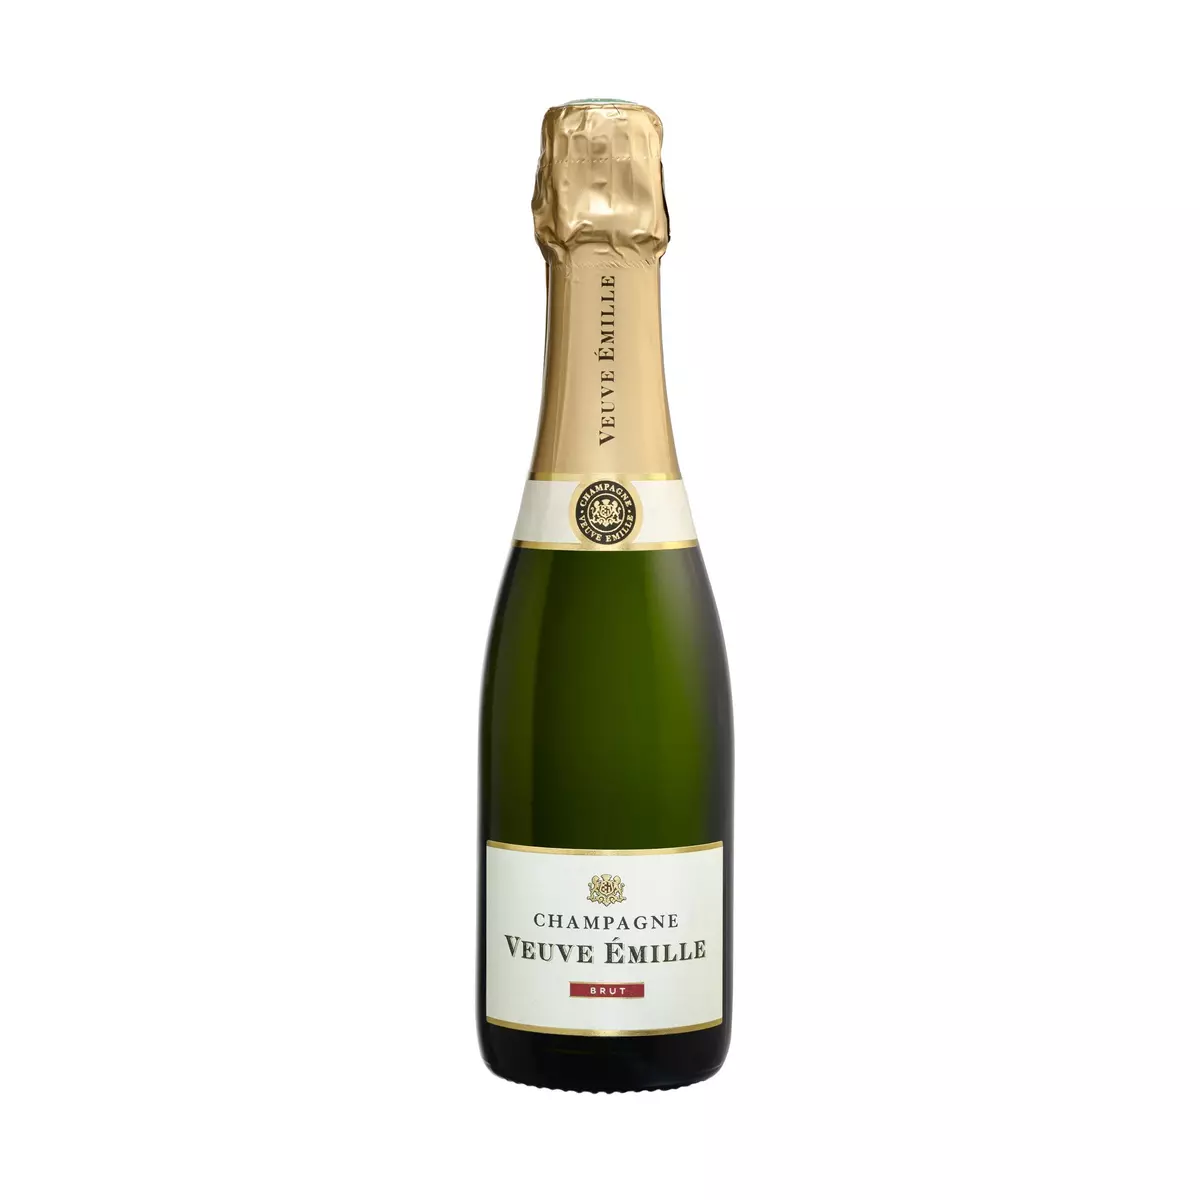 VEUVE EMILLE AOP Champagne brut Petit format 37,5cl